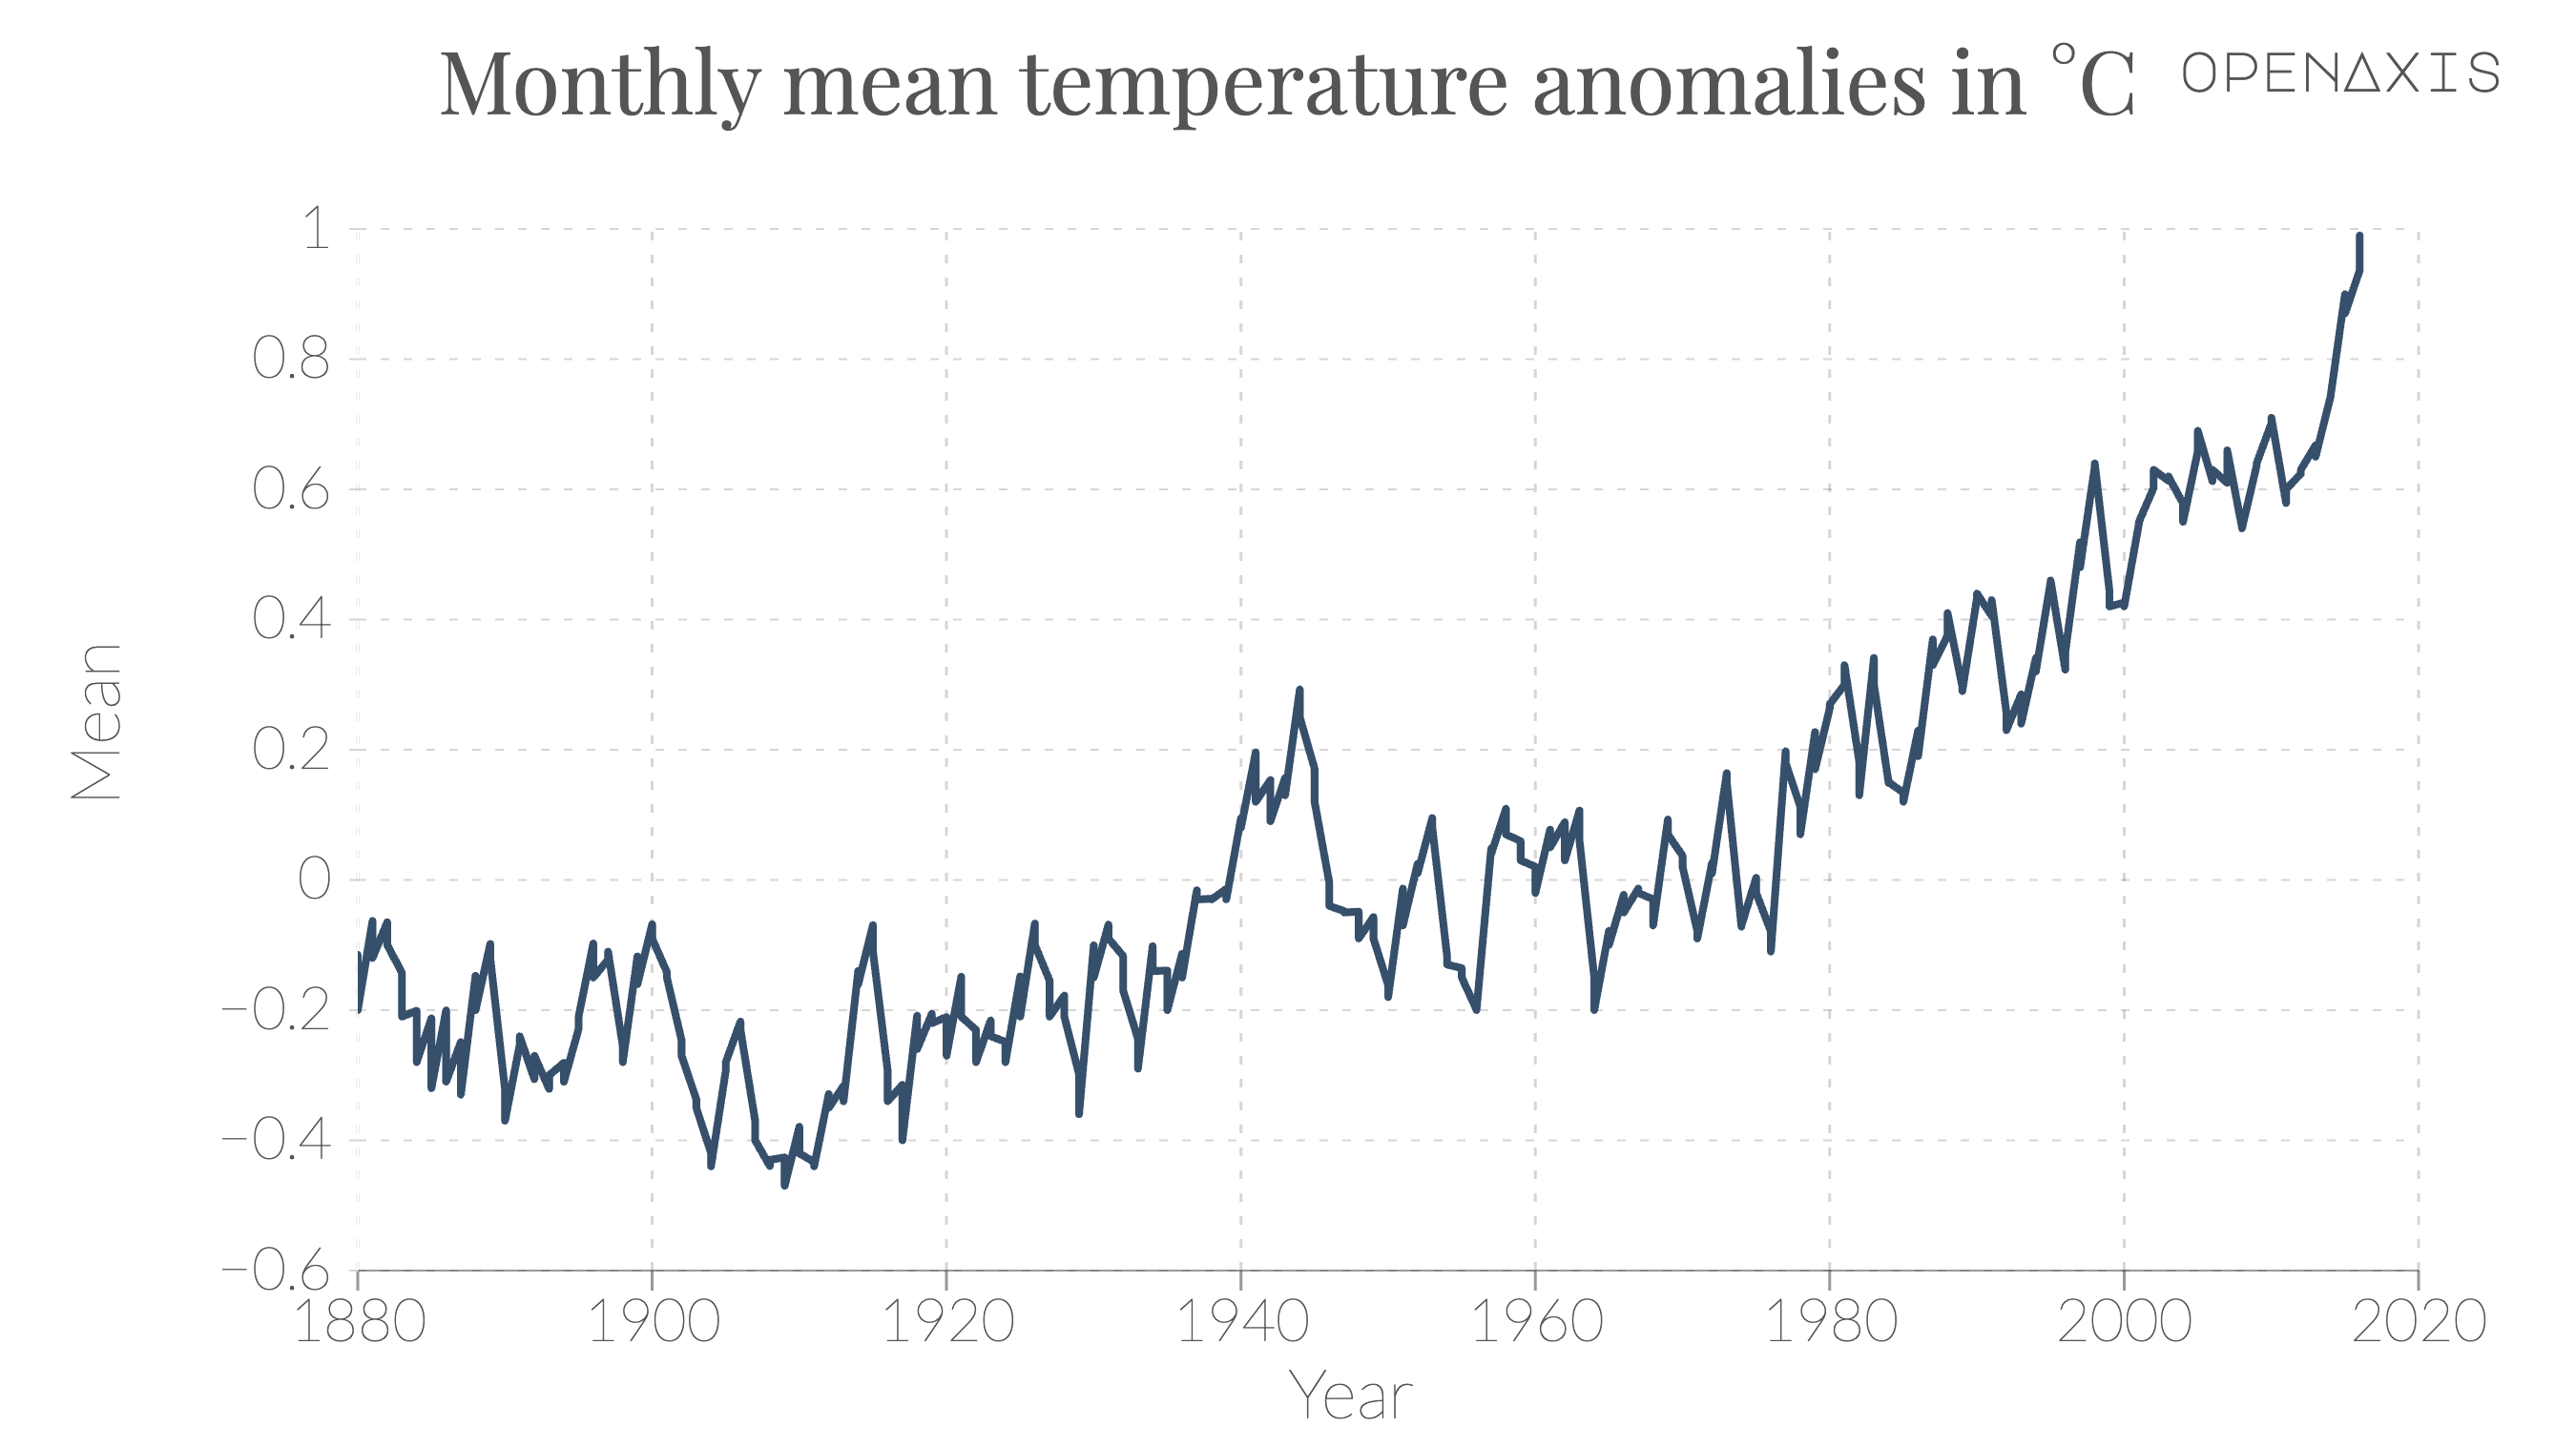 "Monthly mean temperature anomalies in \u00b0C"